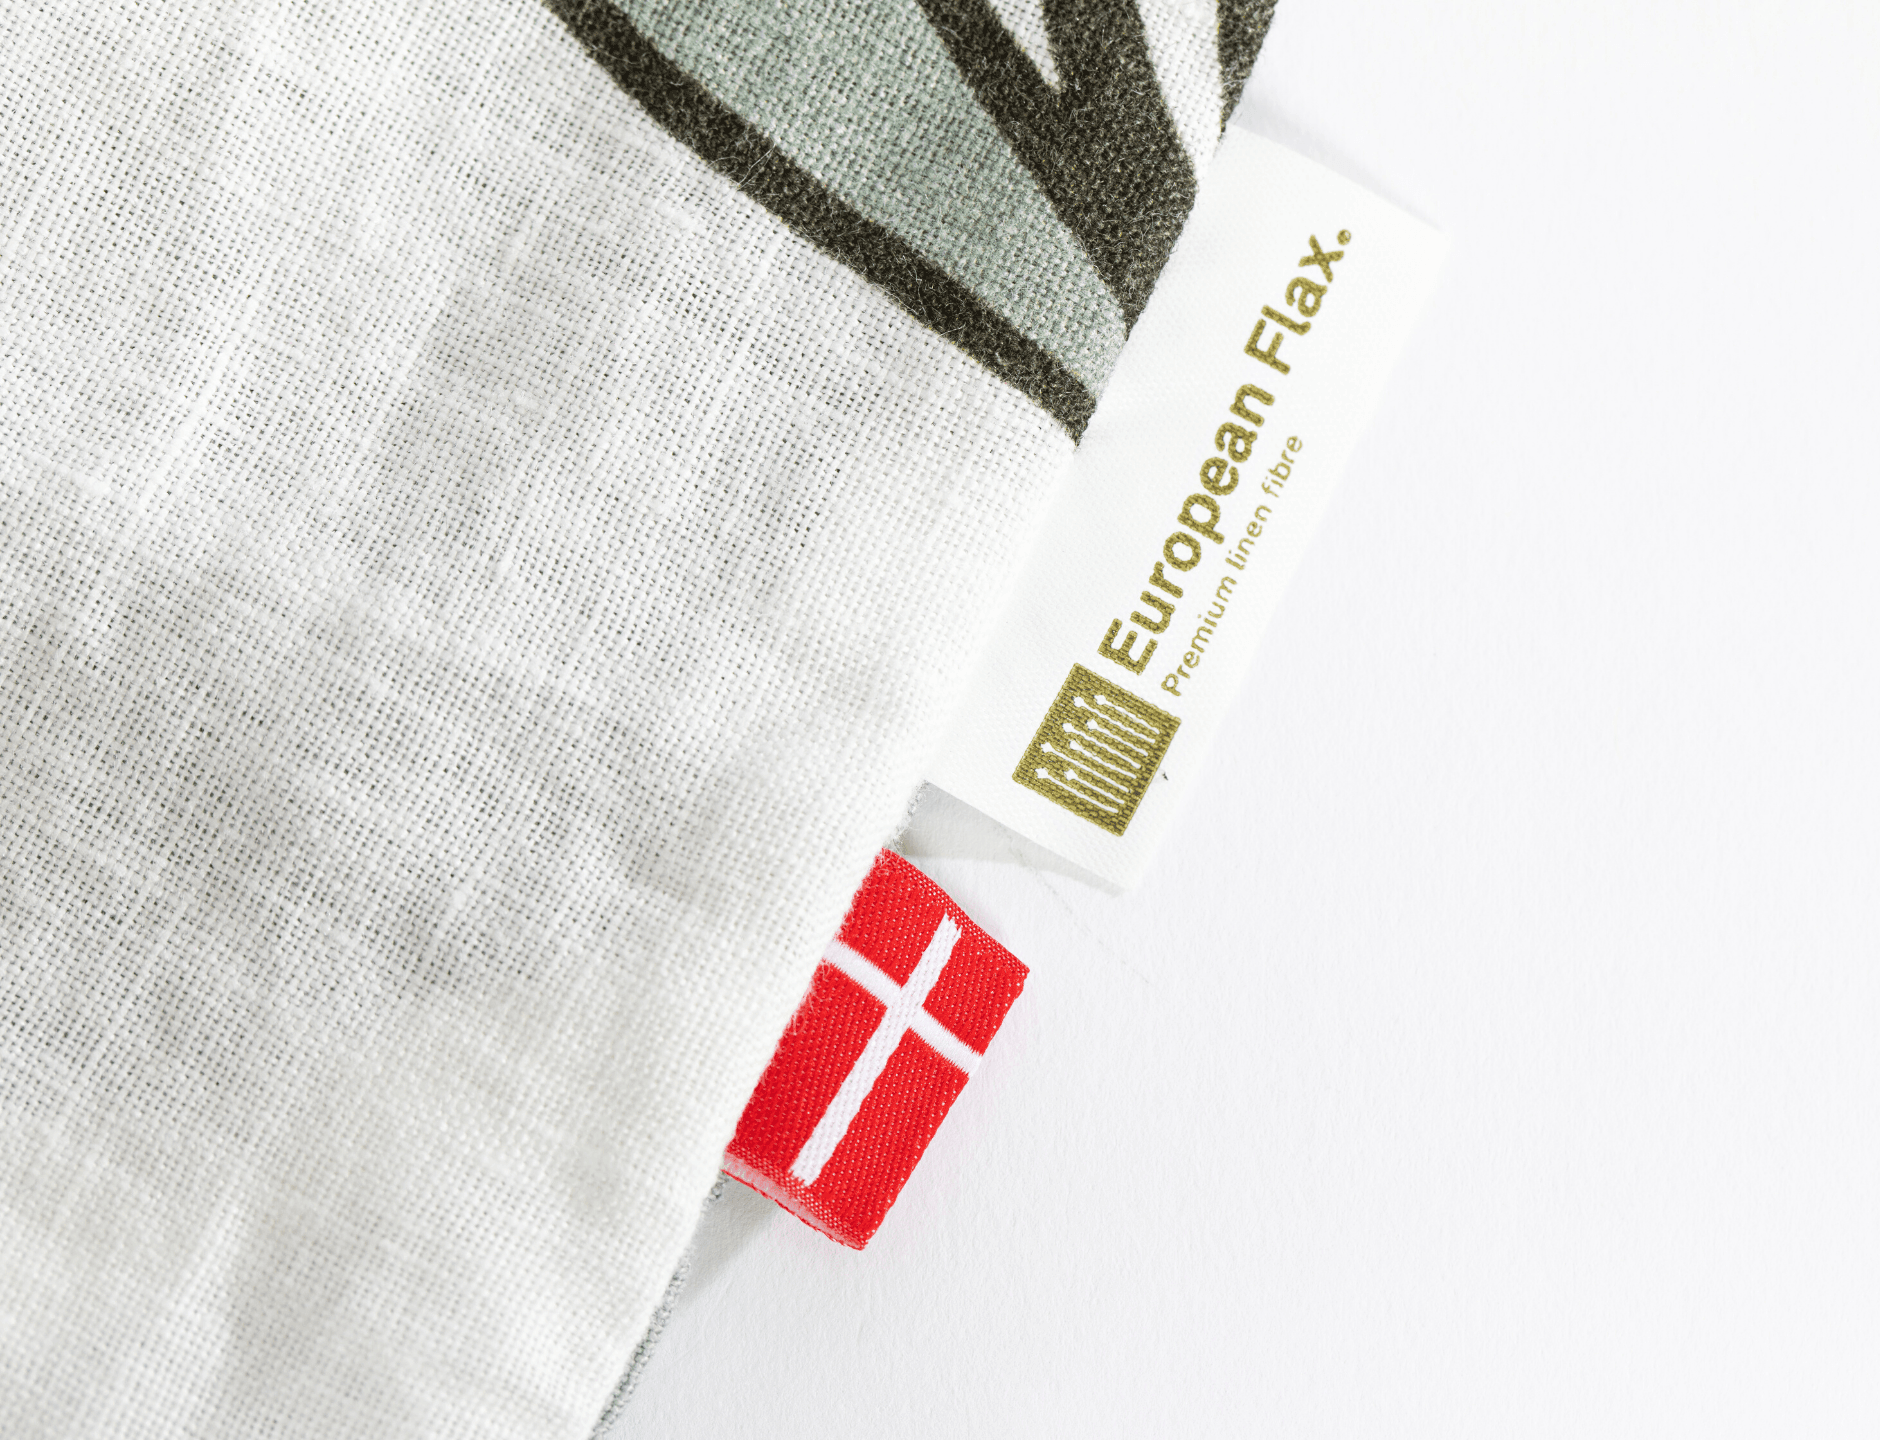 Organic European linen duvet cover set with modern Scandinavian floral design - Twin / Standard, Full/Queen / Standard, King/Cal-King / Standard, King/Cal-King / King